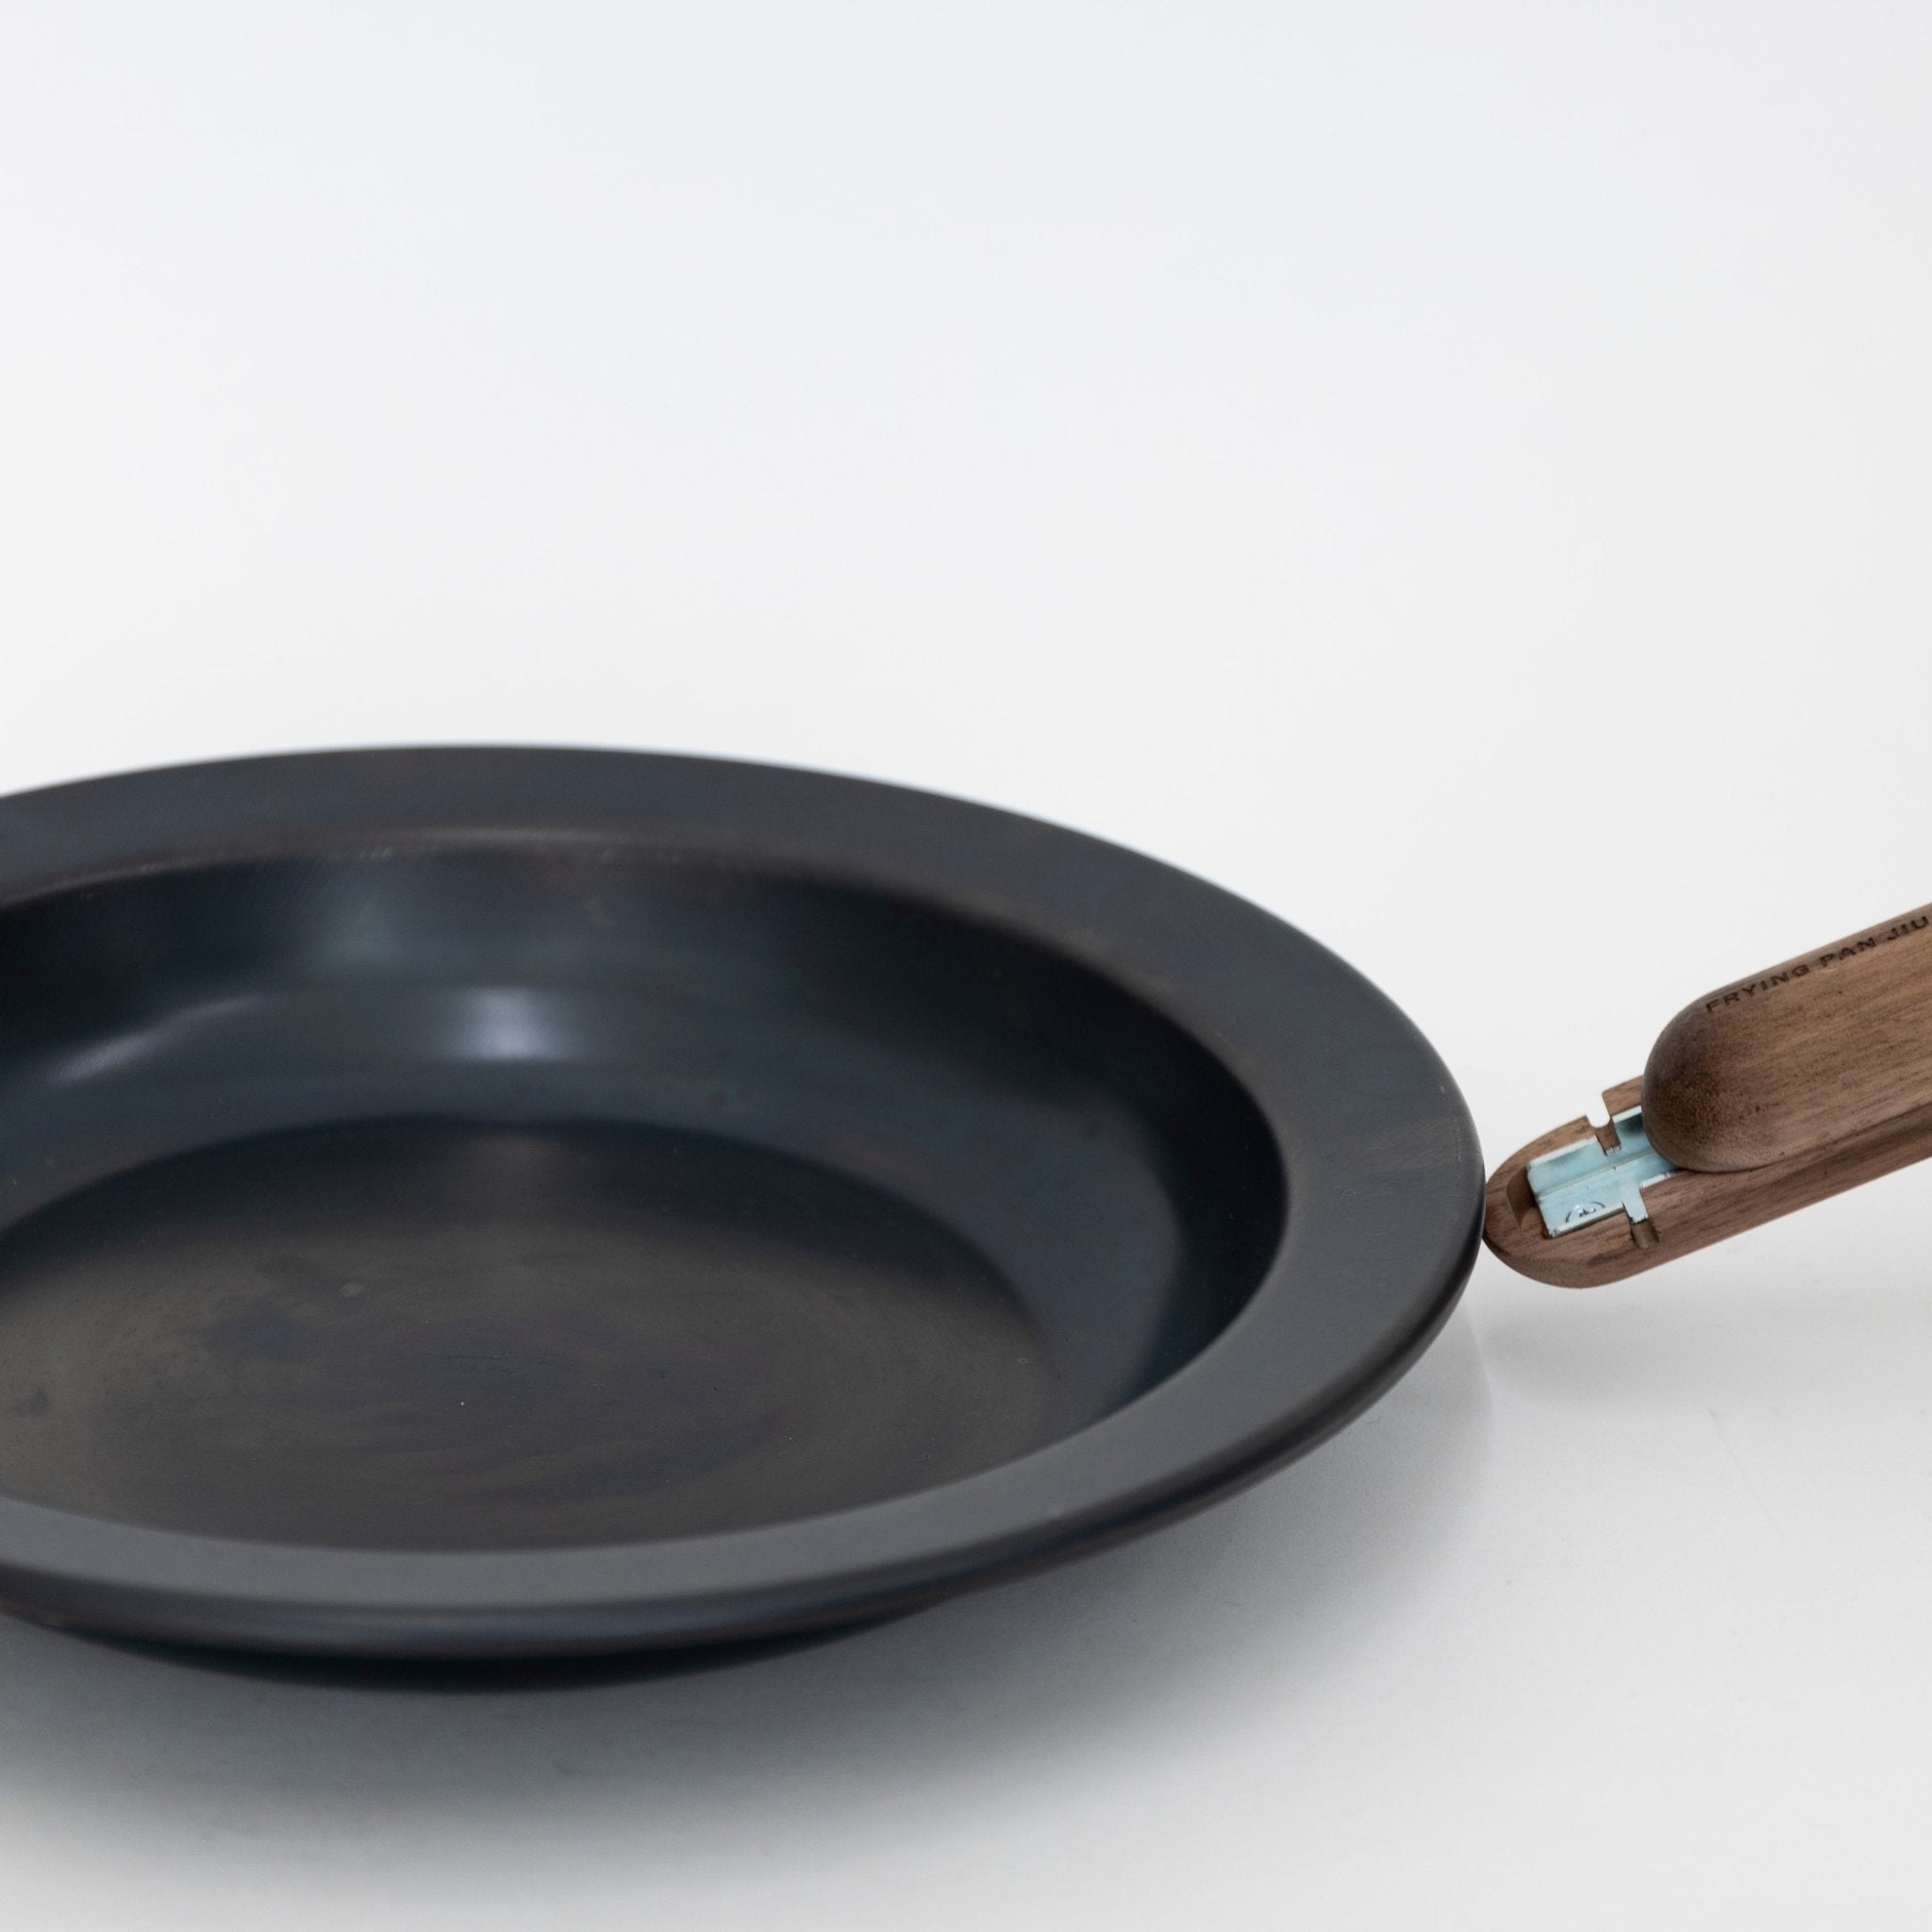 Detachable Handle Cookware : JIU Frying Pan